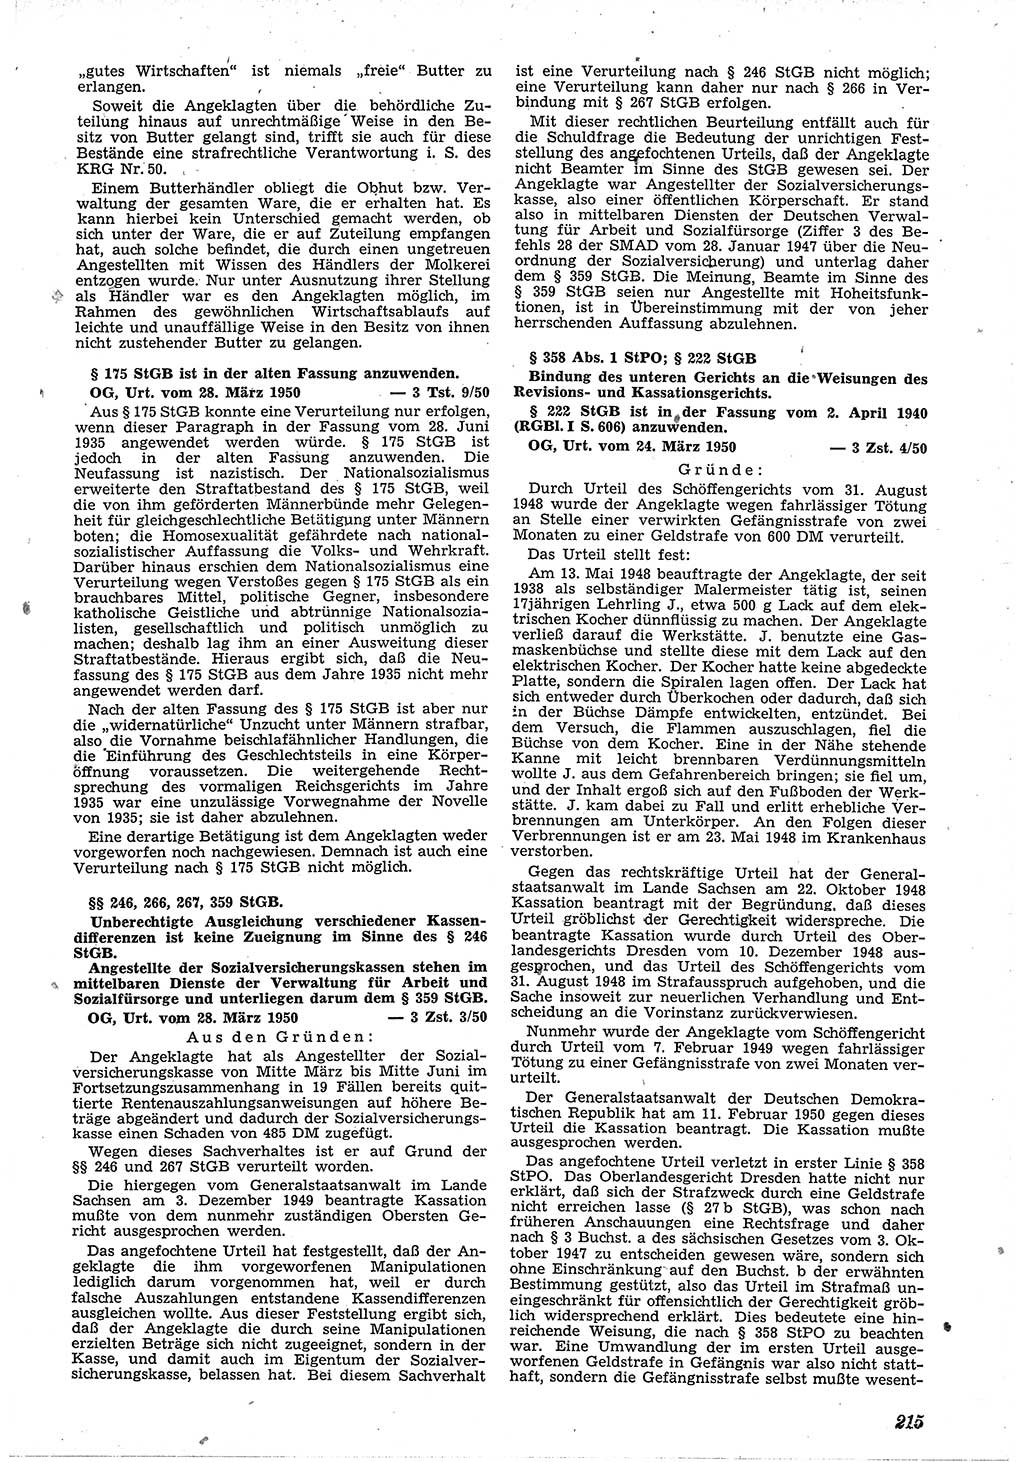 Neue Justiz (NJ), Zeitschrift für Recht und Rechtswissenschaft [Deutsche Demokratische Republik (DDR)], 4. Jahrgang 1950, Seite 215 (NJ DDR 1950, S. 215)